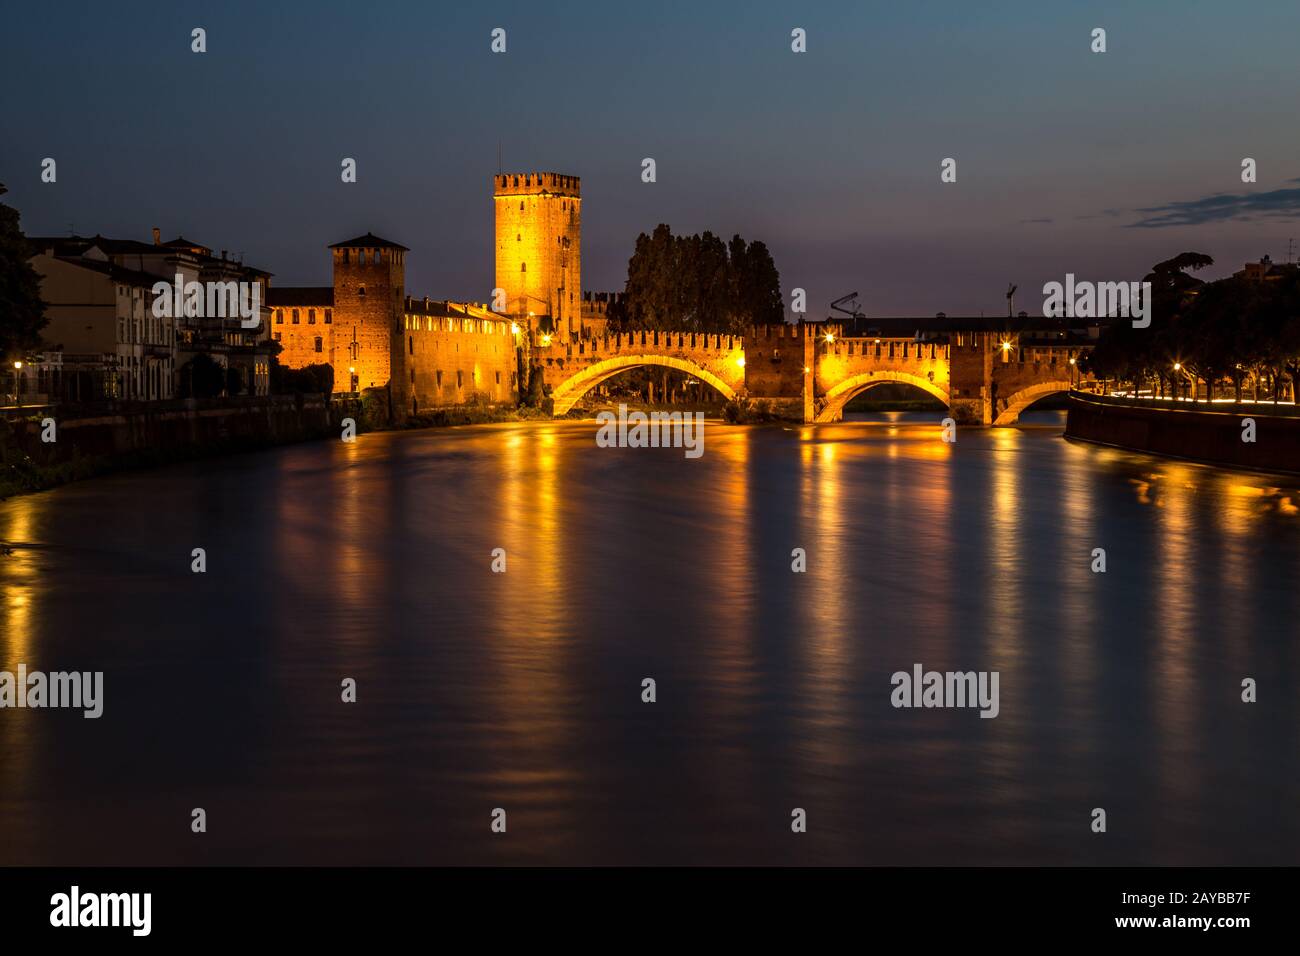 Verona city at night Stock Photo